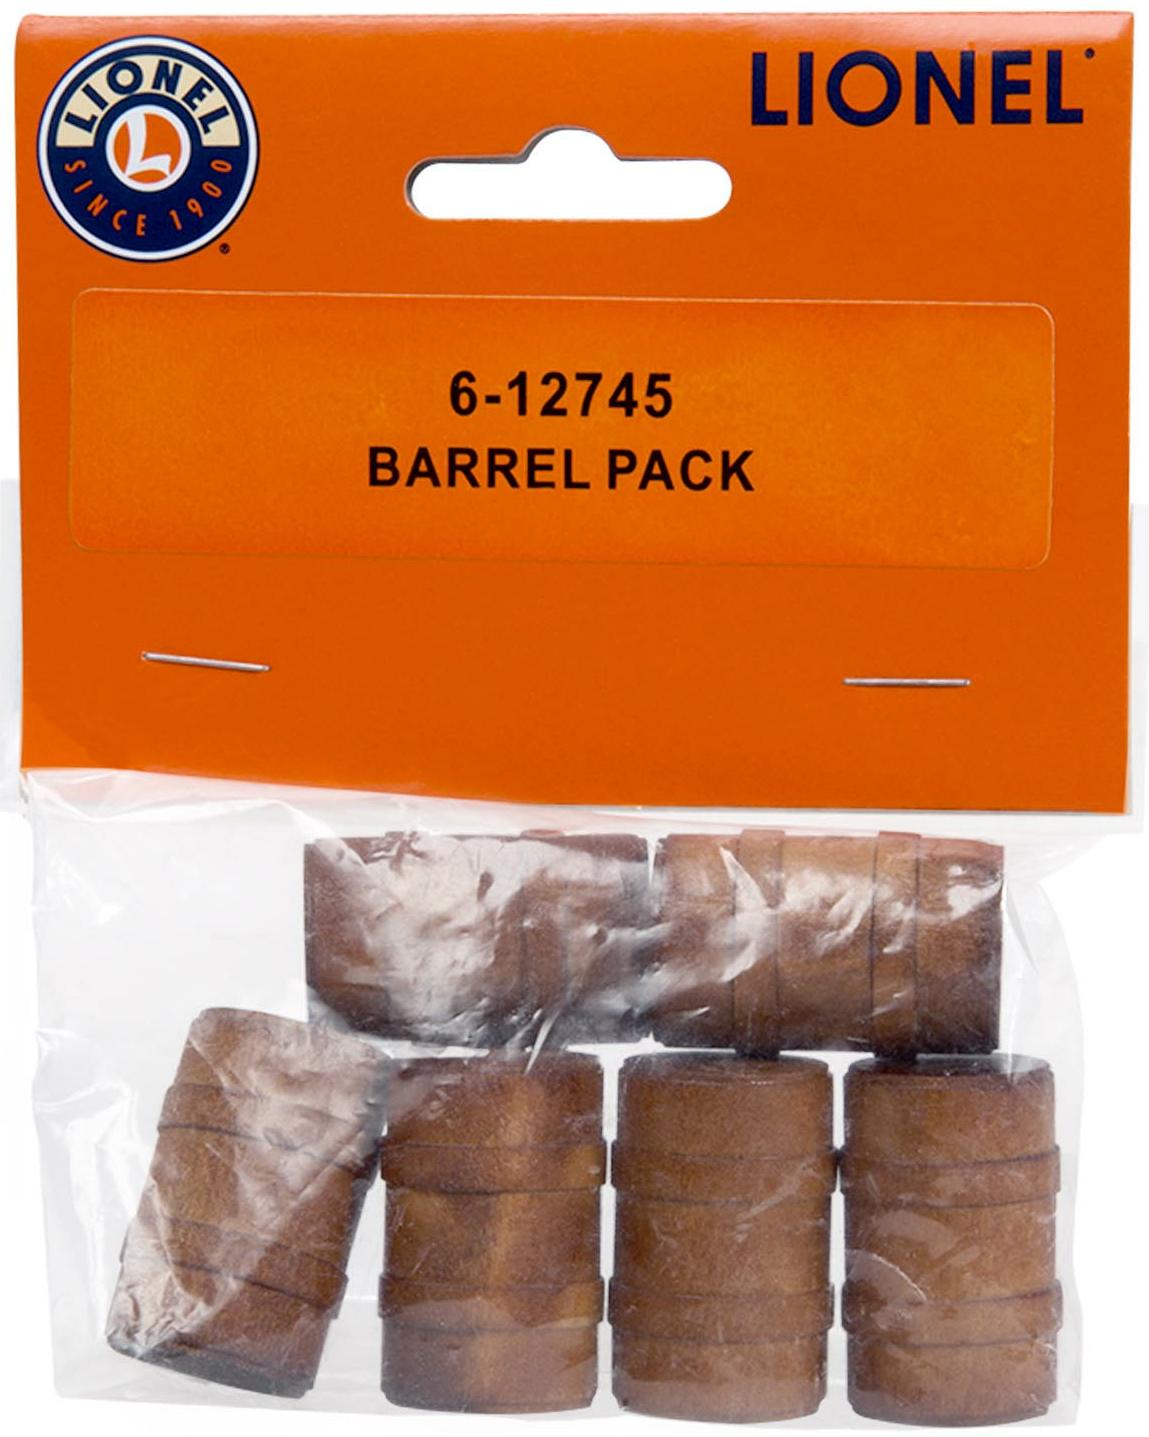 Barrel Pack (set of 6) image